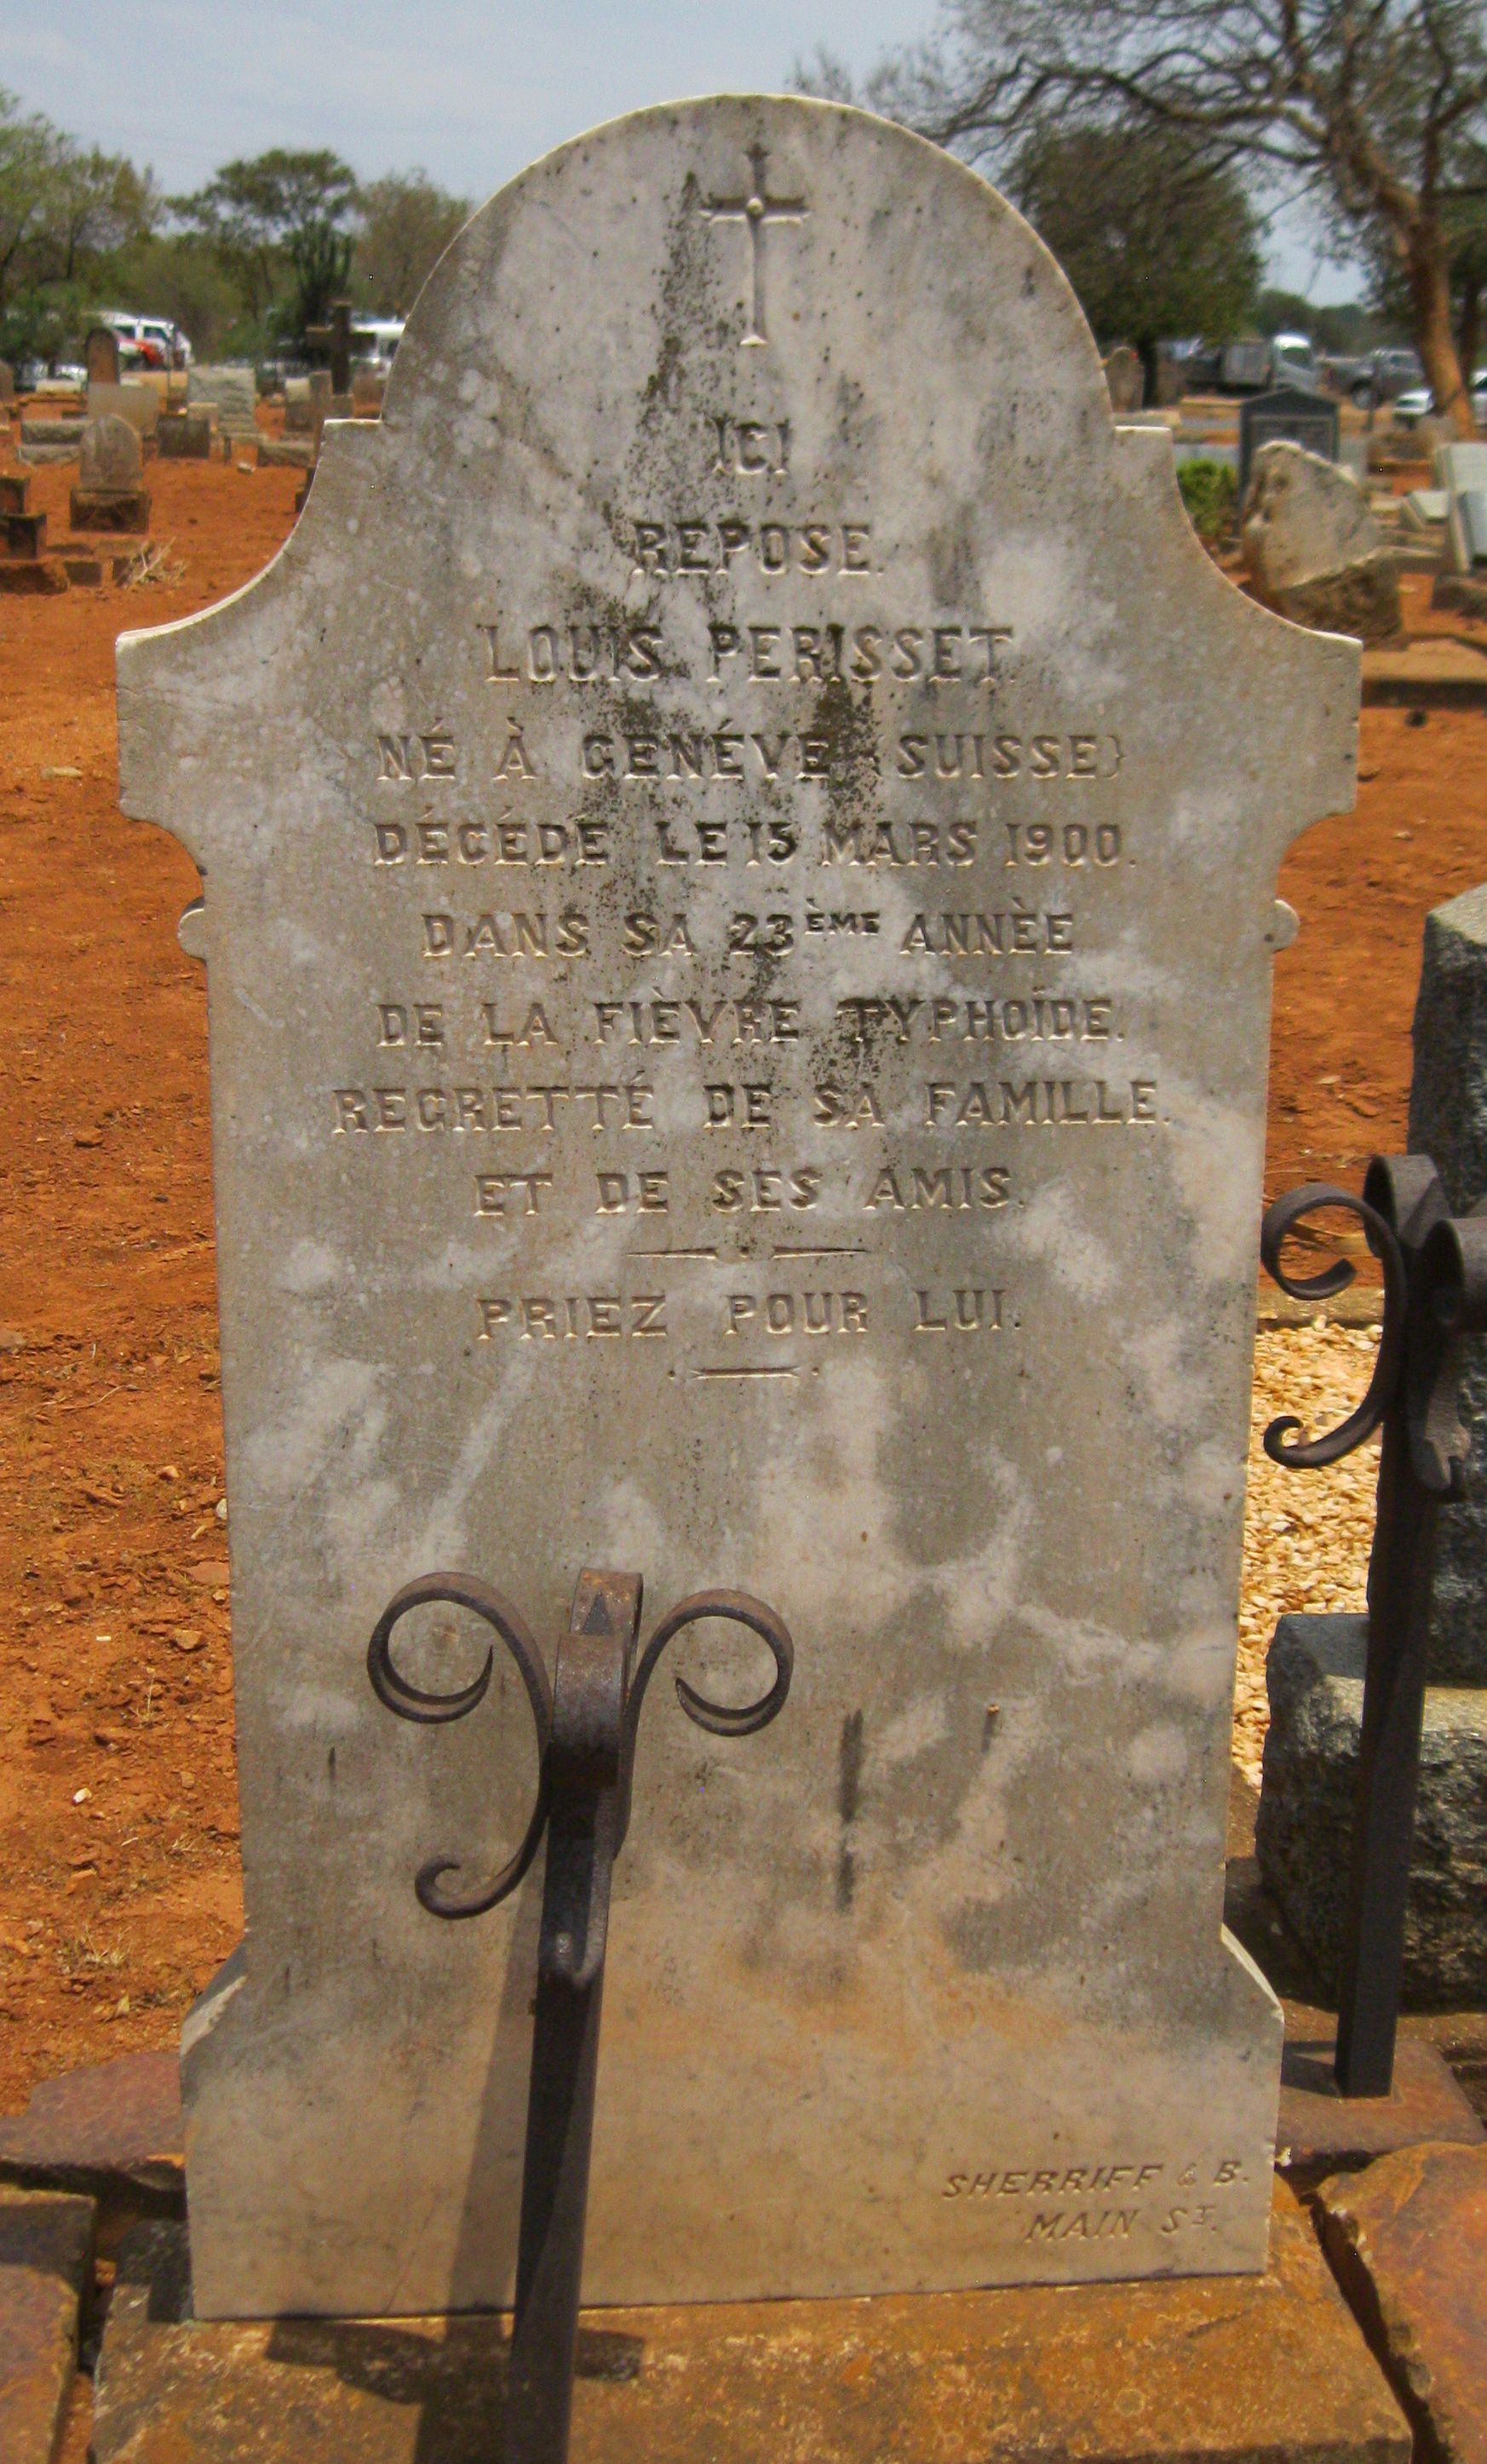 cemeteries_headstone_byo_perisset_1900